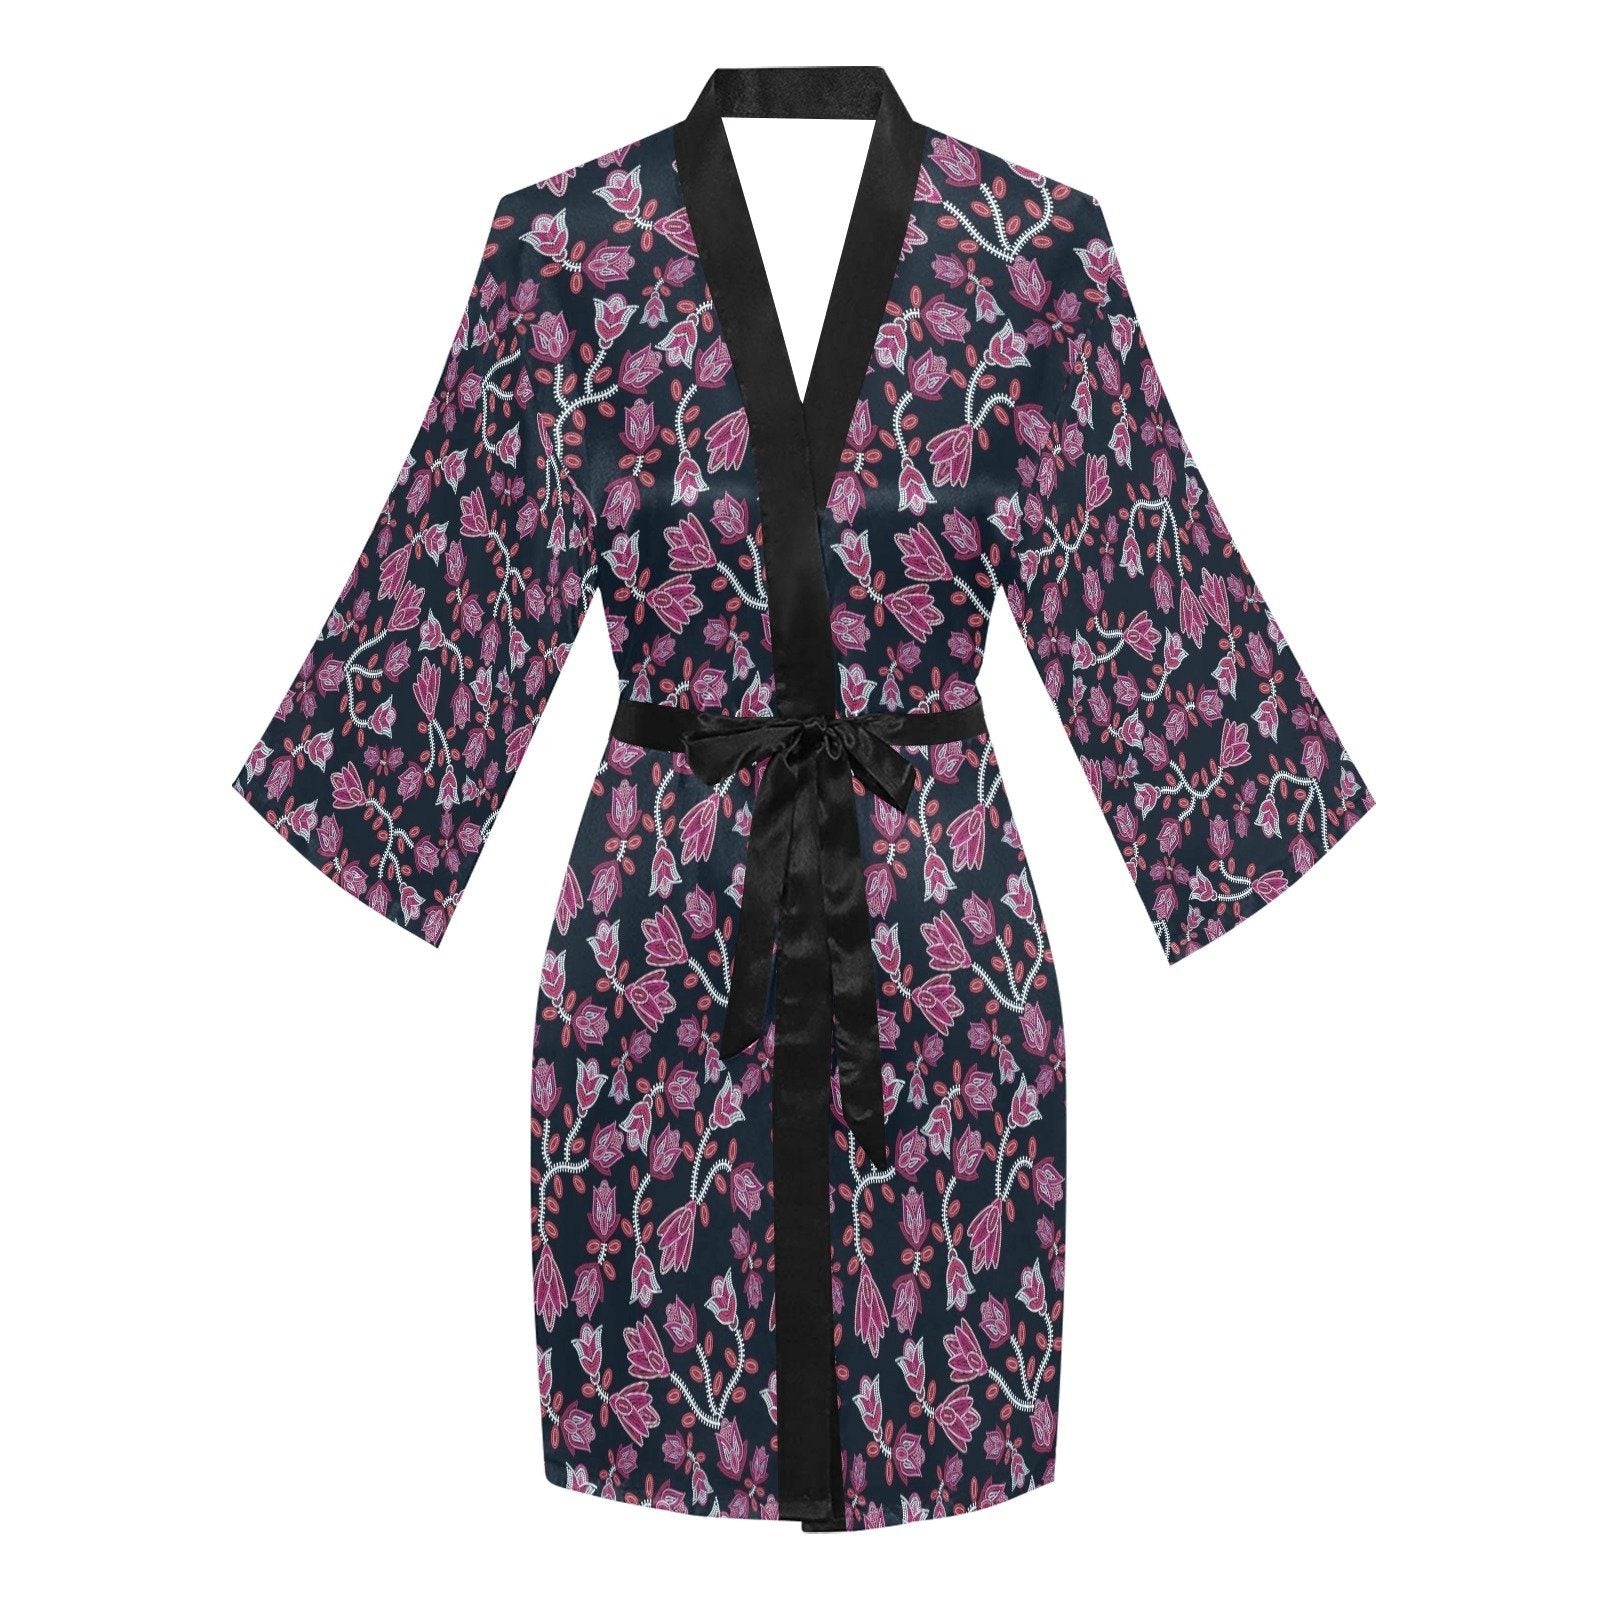 Beaded Pink Long Sleeve Kimono Robe Long Sleeve Kimono Robe e-joyer 